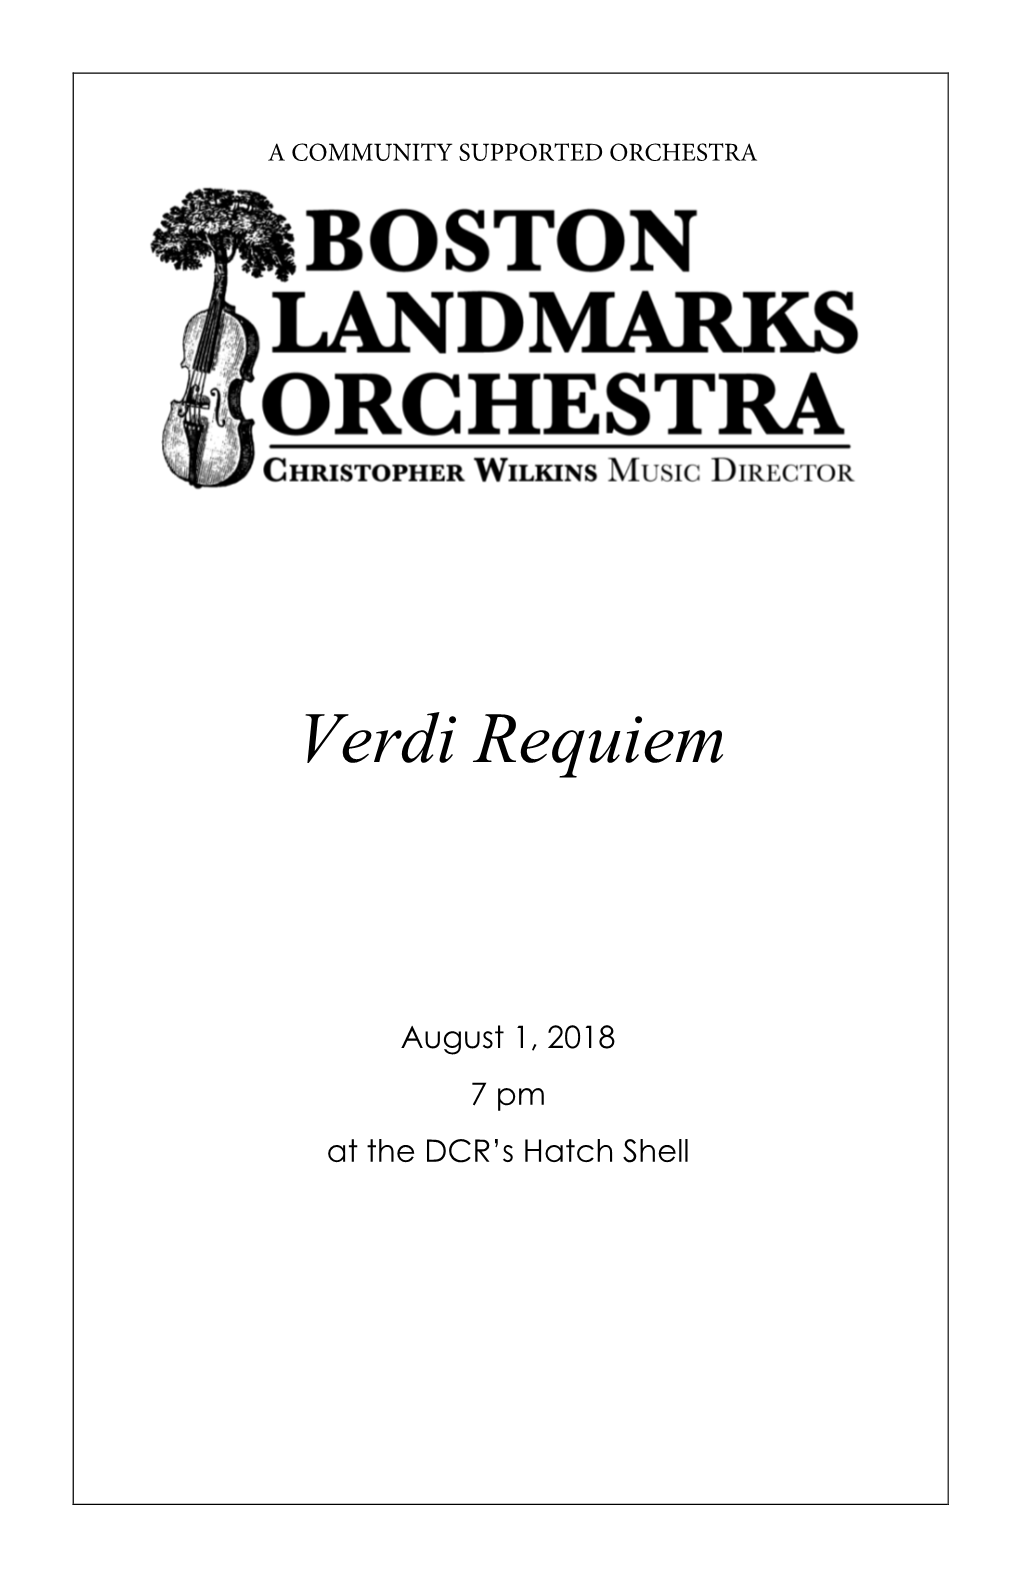 Verdi Requiem